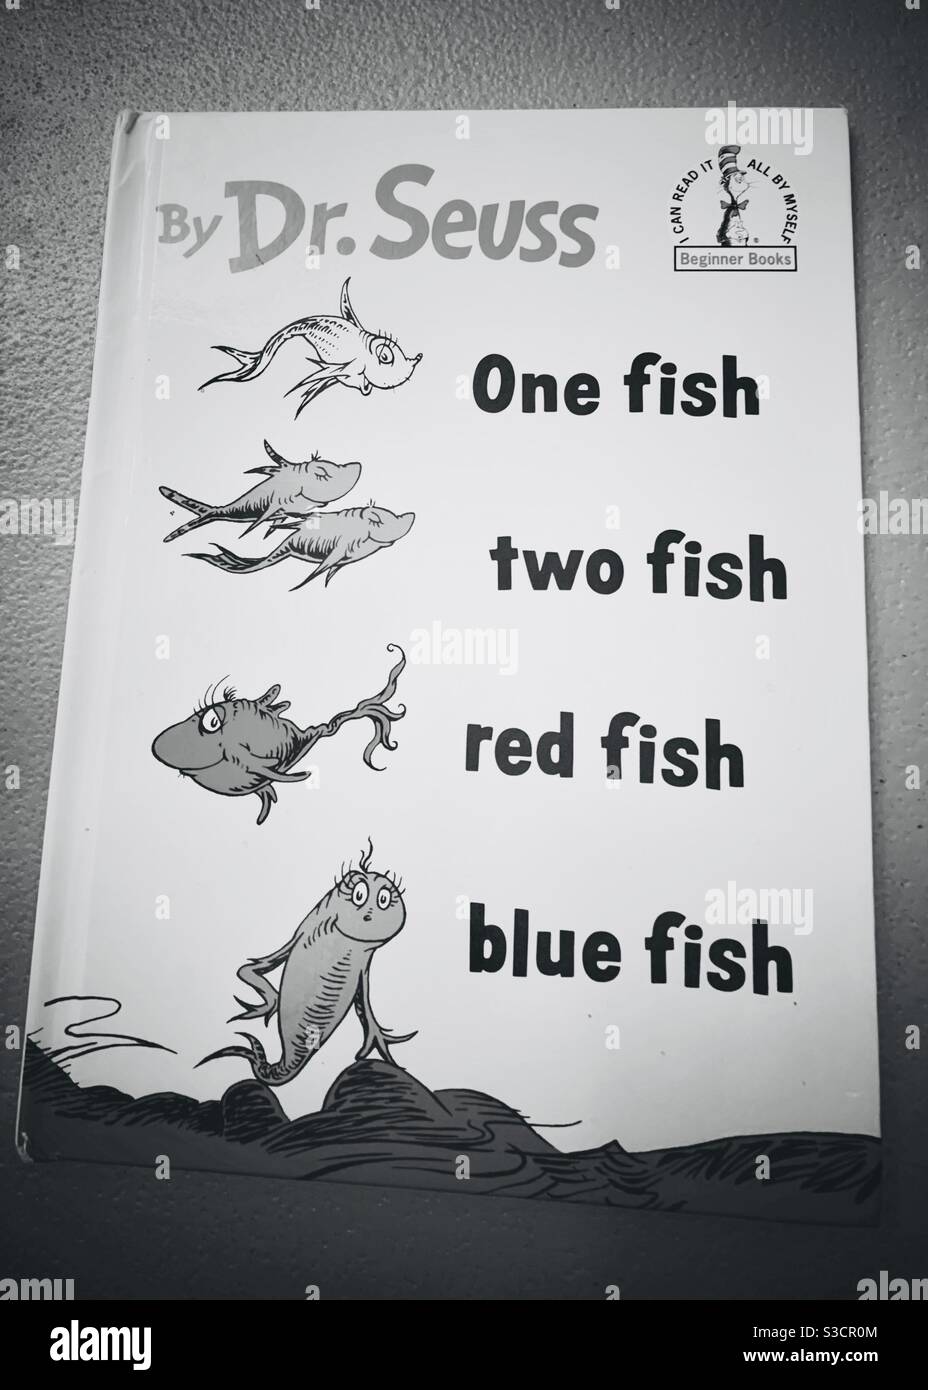 Livre pour enfants - livre de Dr. Seuss - un poisson, deux poissons, poisson rouge, poisson bleu - apprentissage et éducation - livres d'images Banque D'Images